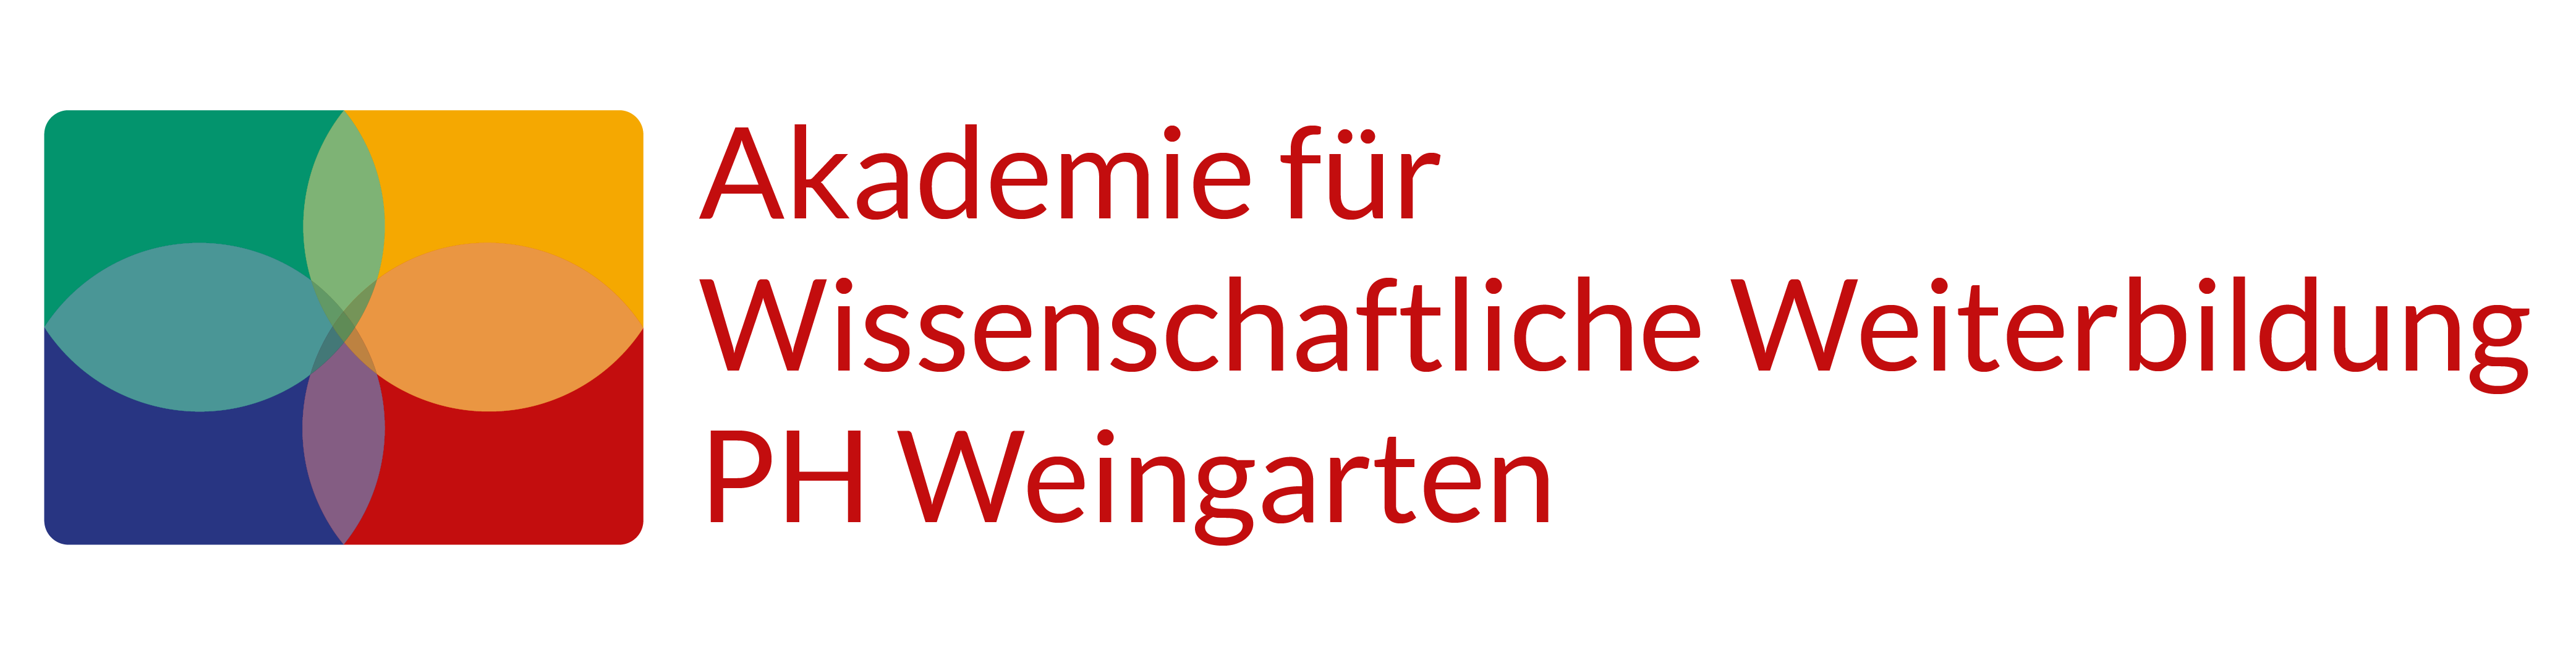 Akademie für wissenschaftliche Weiterbildung Logo